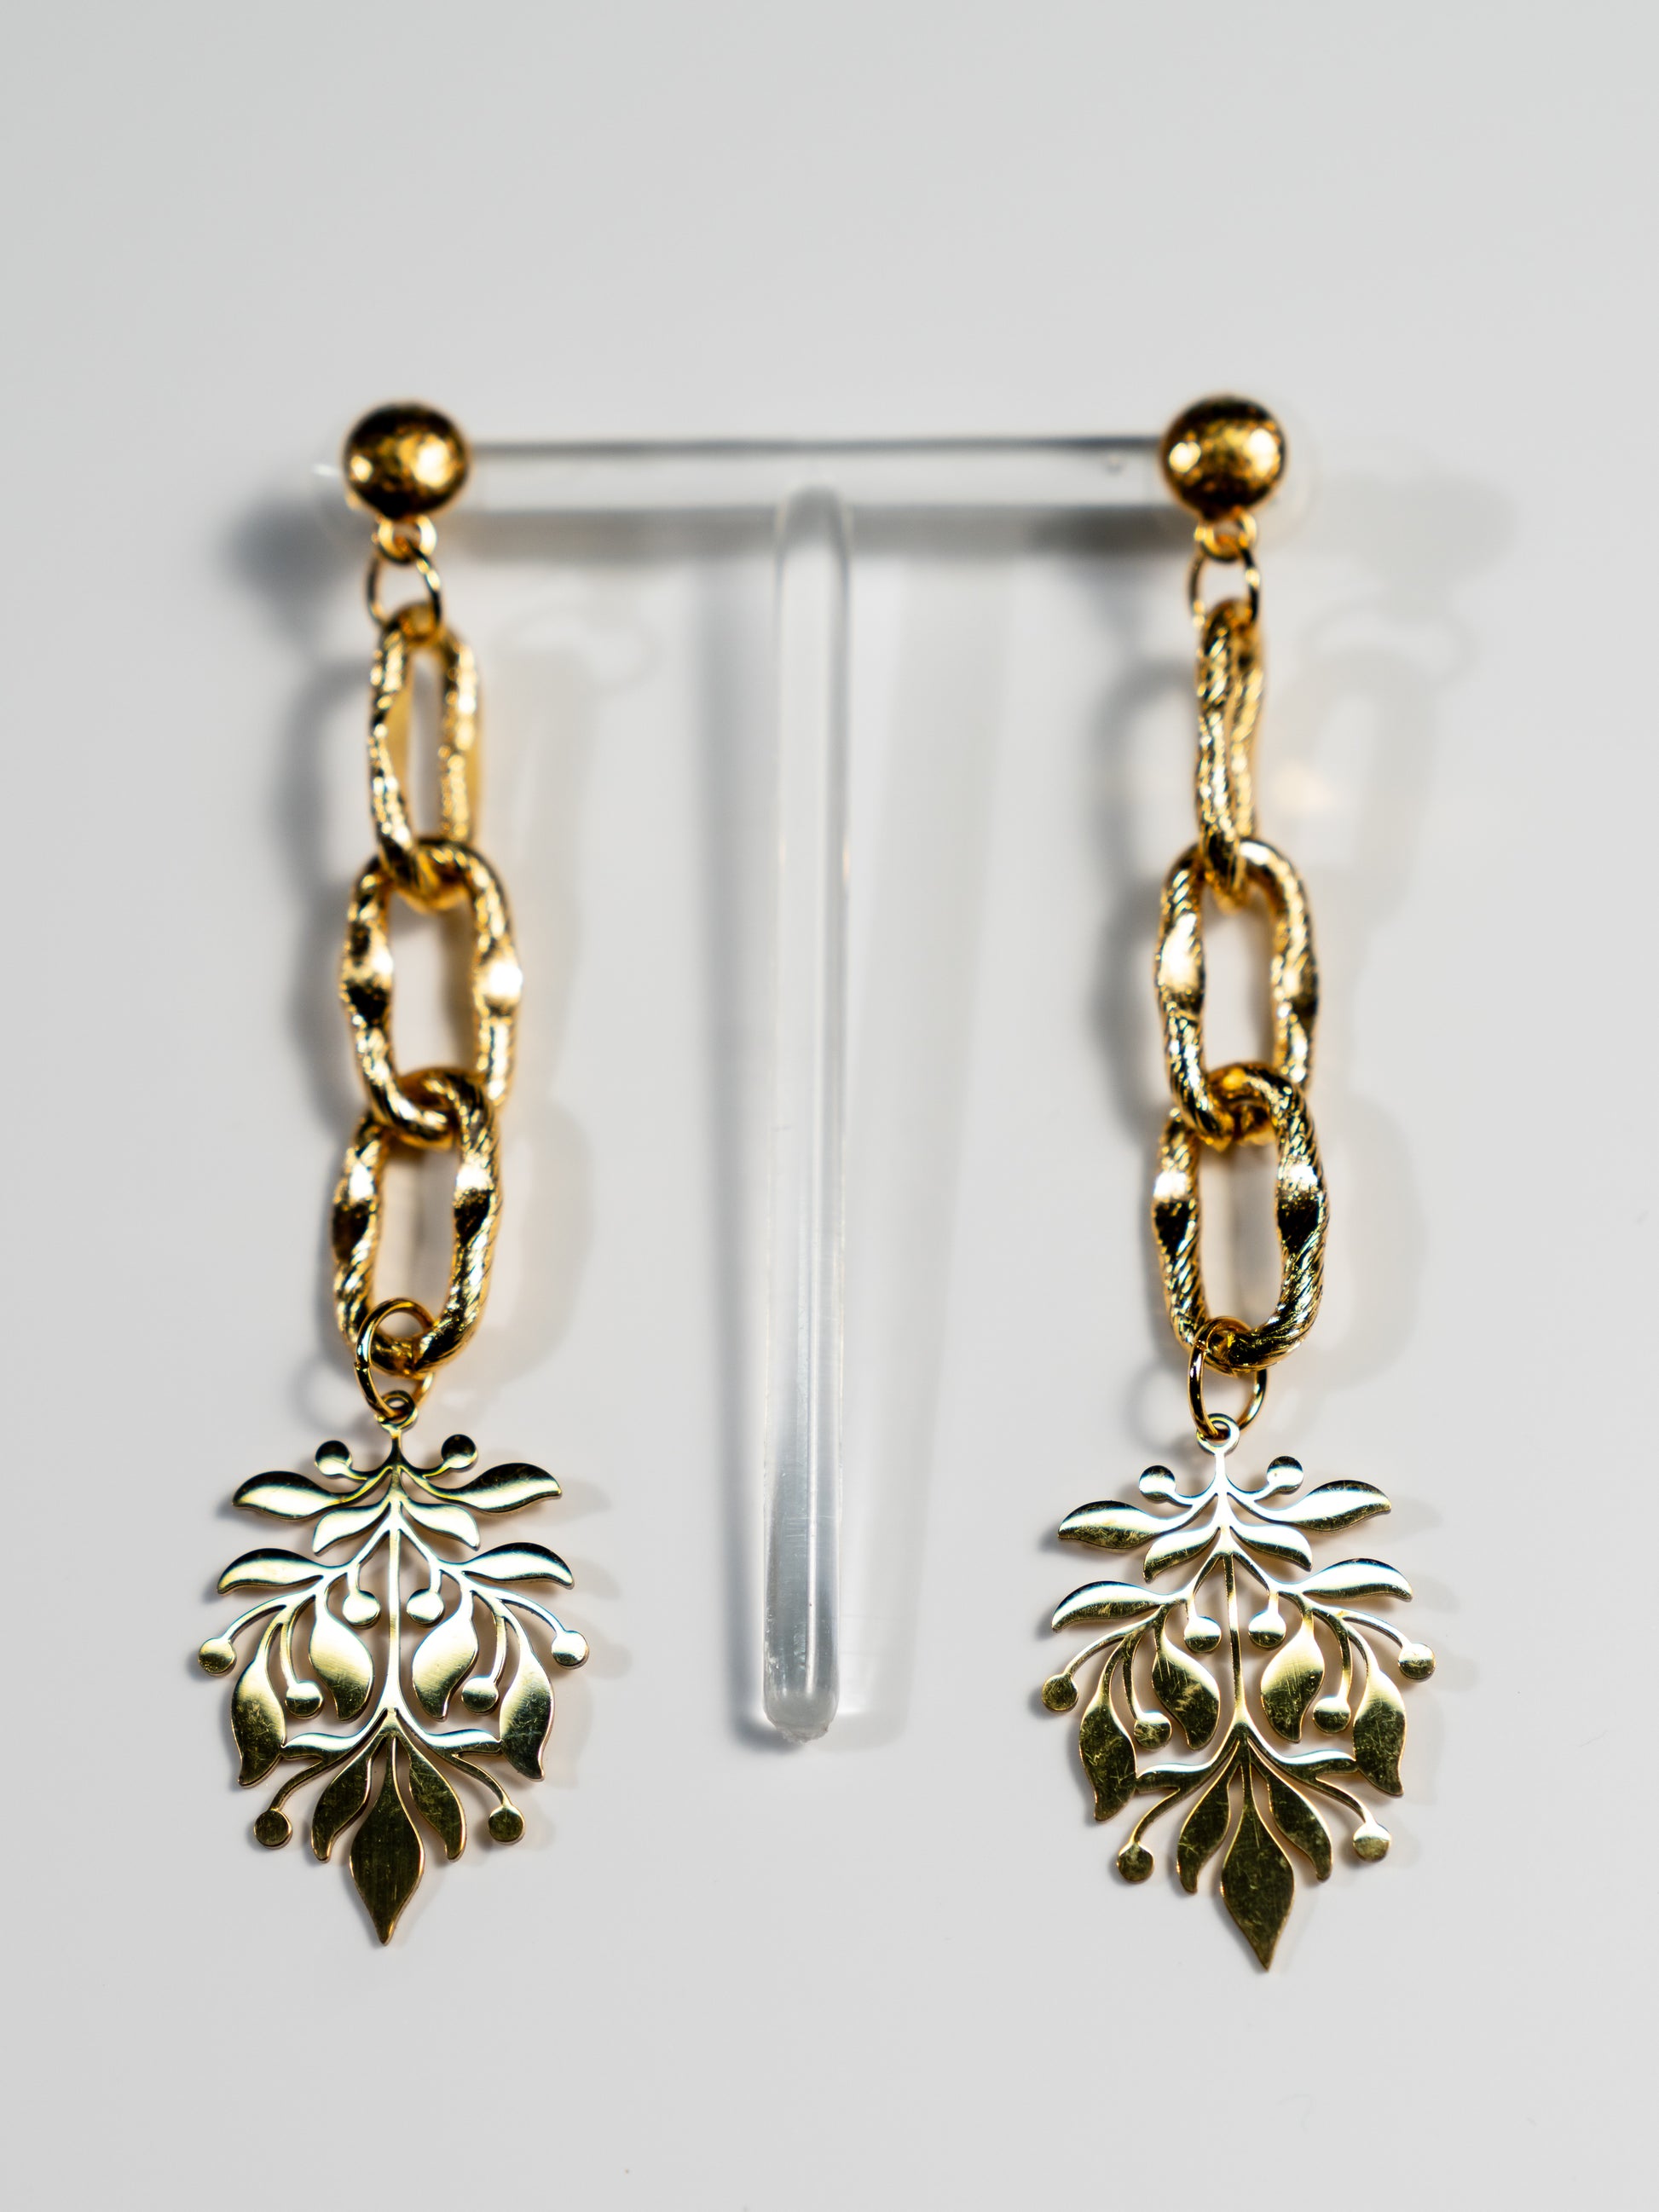 Spring stainless steel earrings